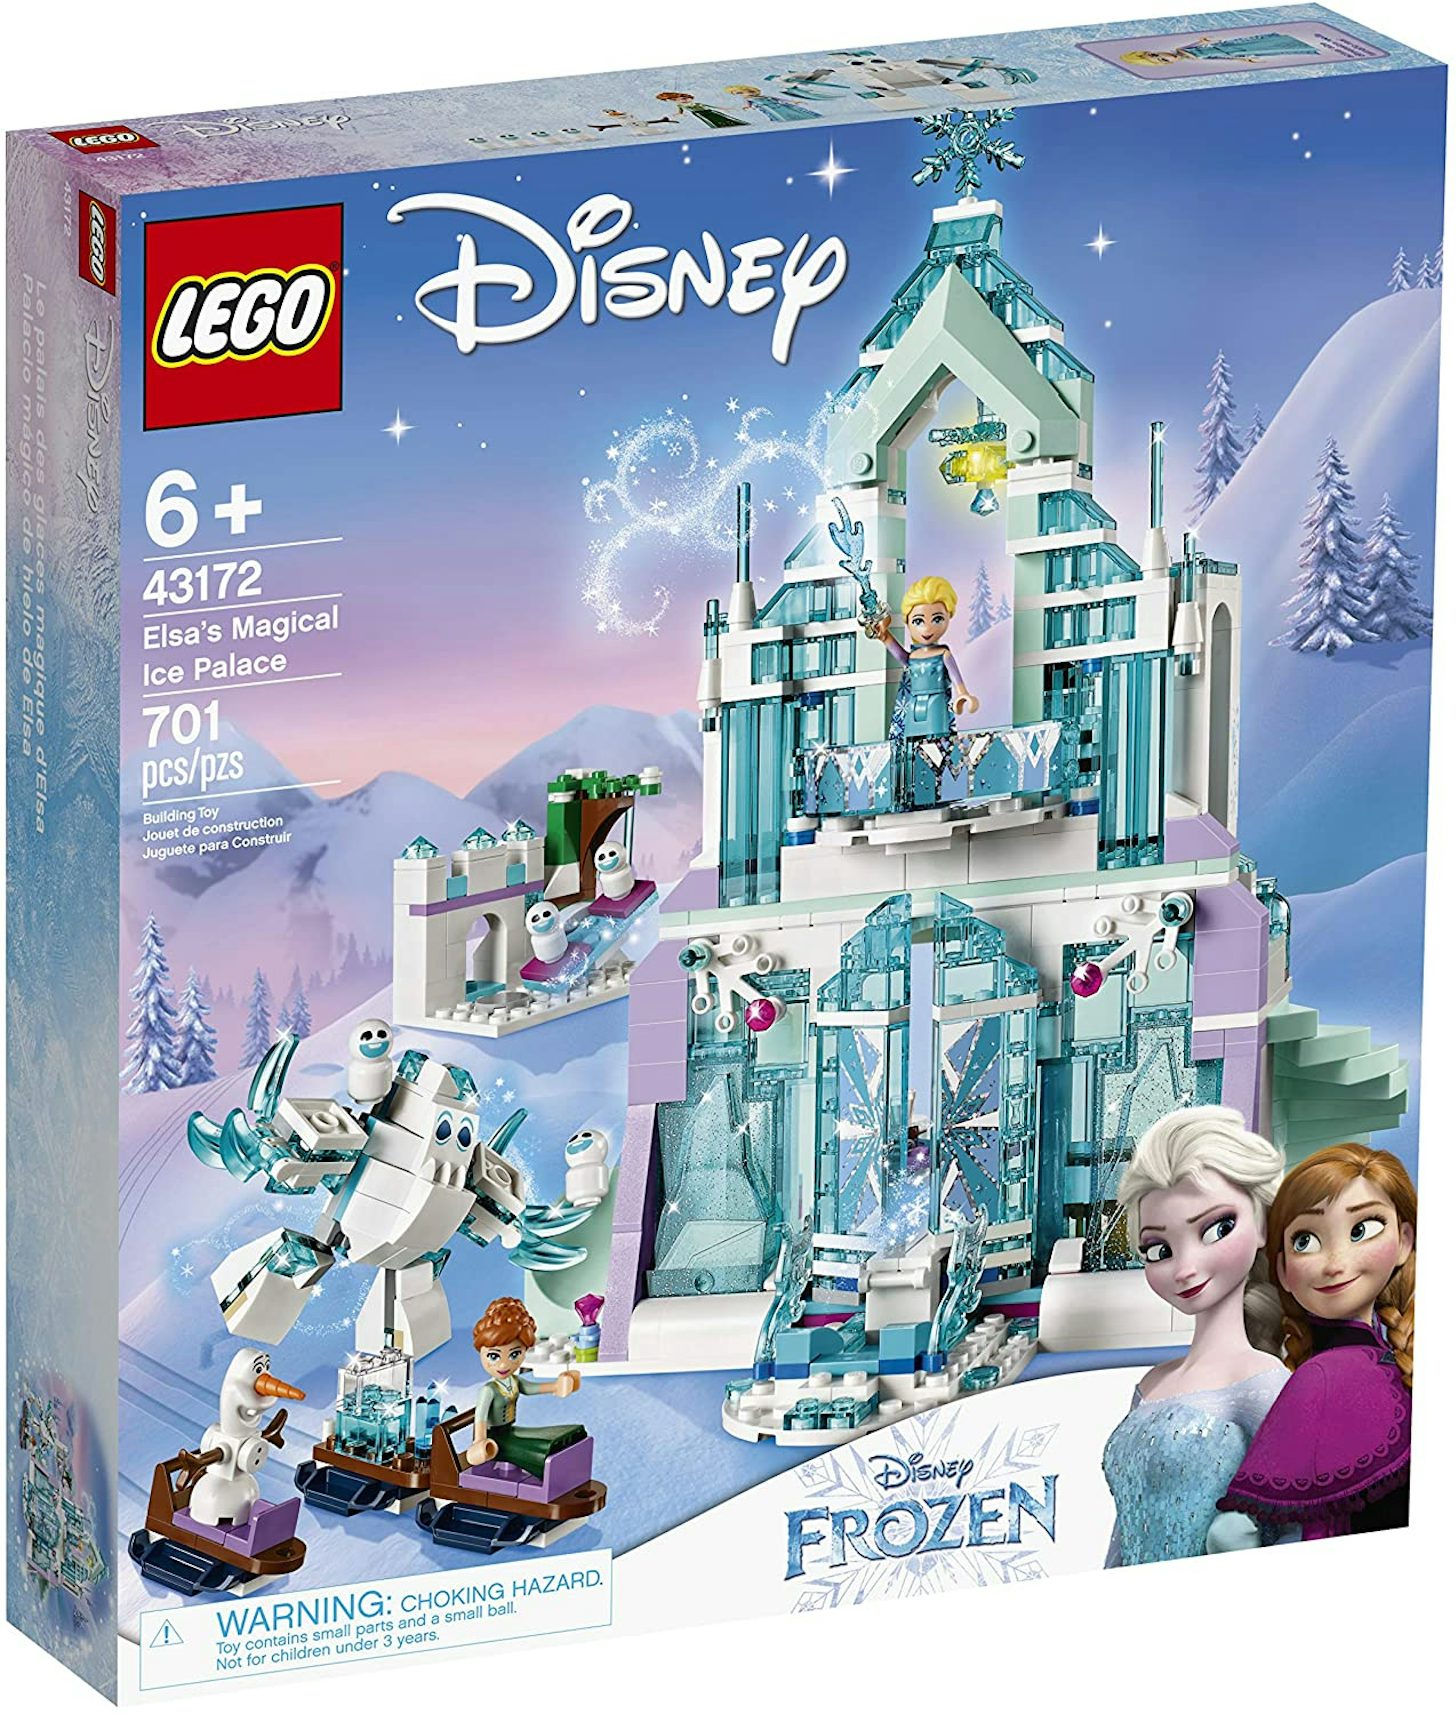 LEGO Disney Frozen Elsa's Magical Ice Palace Set 43172 - US